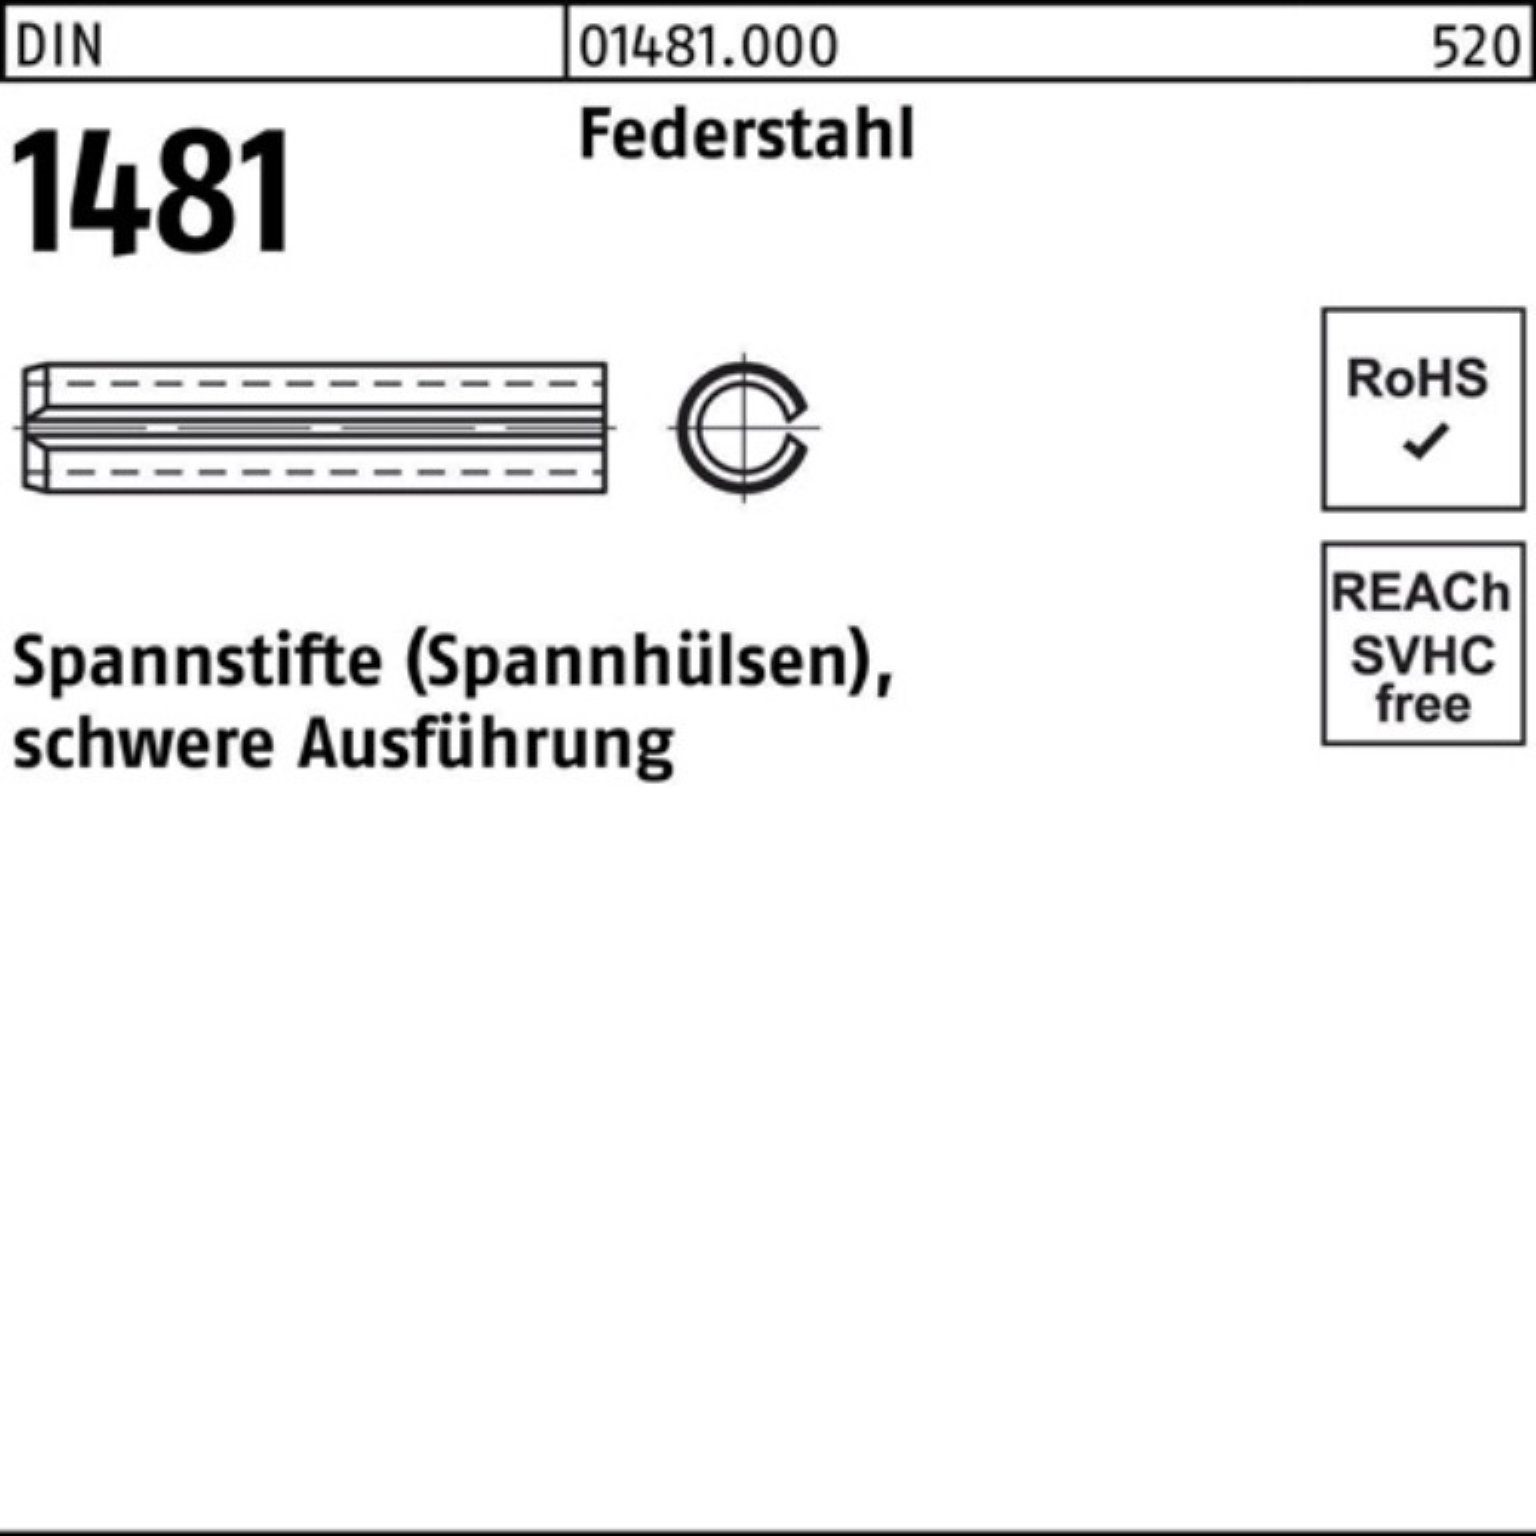 Reyher Spannstift 1000er Pack Spannstift DIN 1481 3x 14 Federstahl schwere Ausführung 1